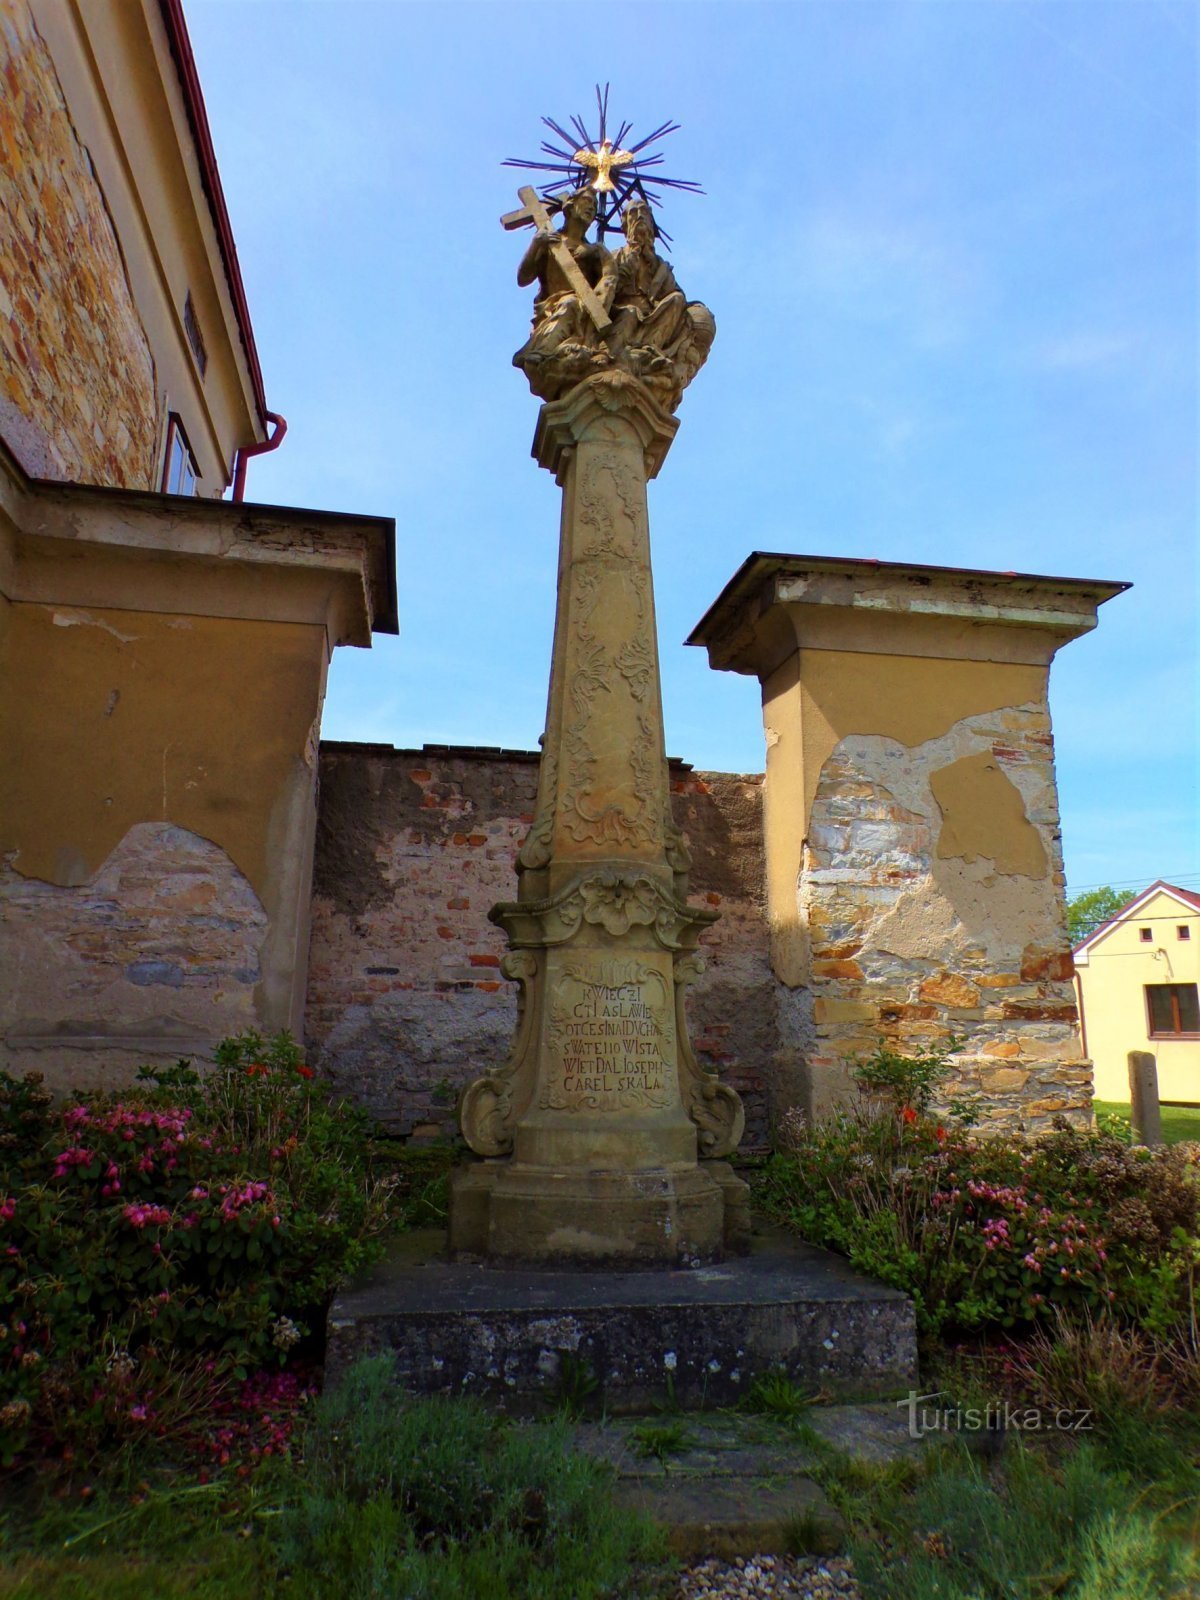 Một cột với tác phẩm điêu khắc của Chúa Ba Ngôi tại nhà xứ (Borohrádek, 20.5.2022/XNUMX/XNUMX)